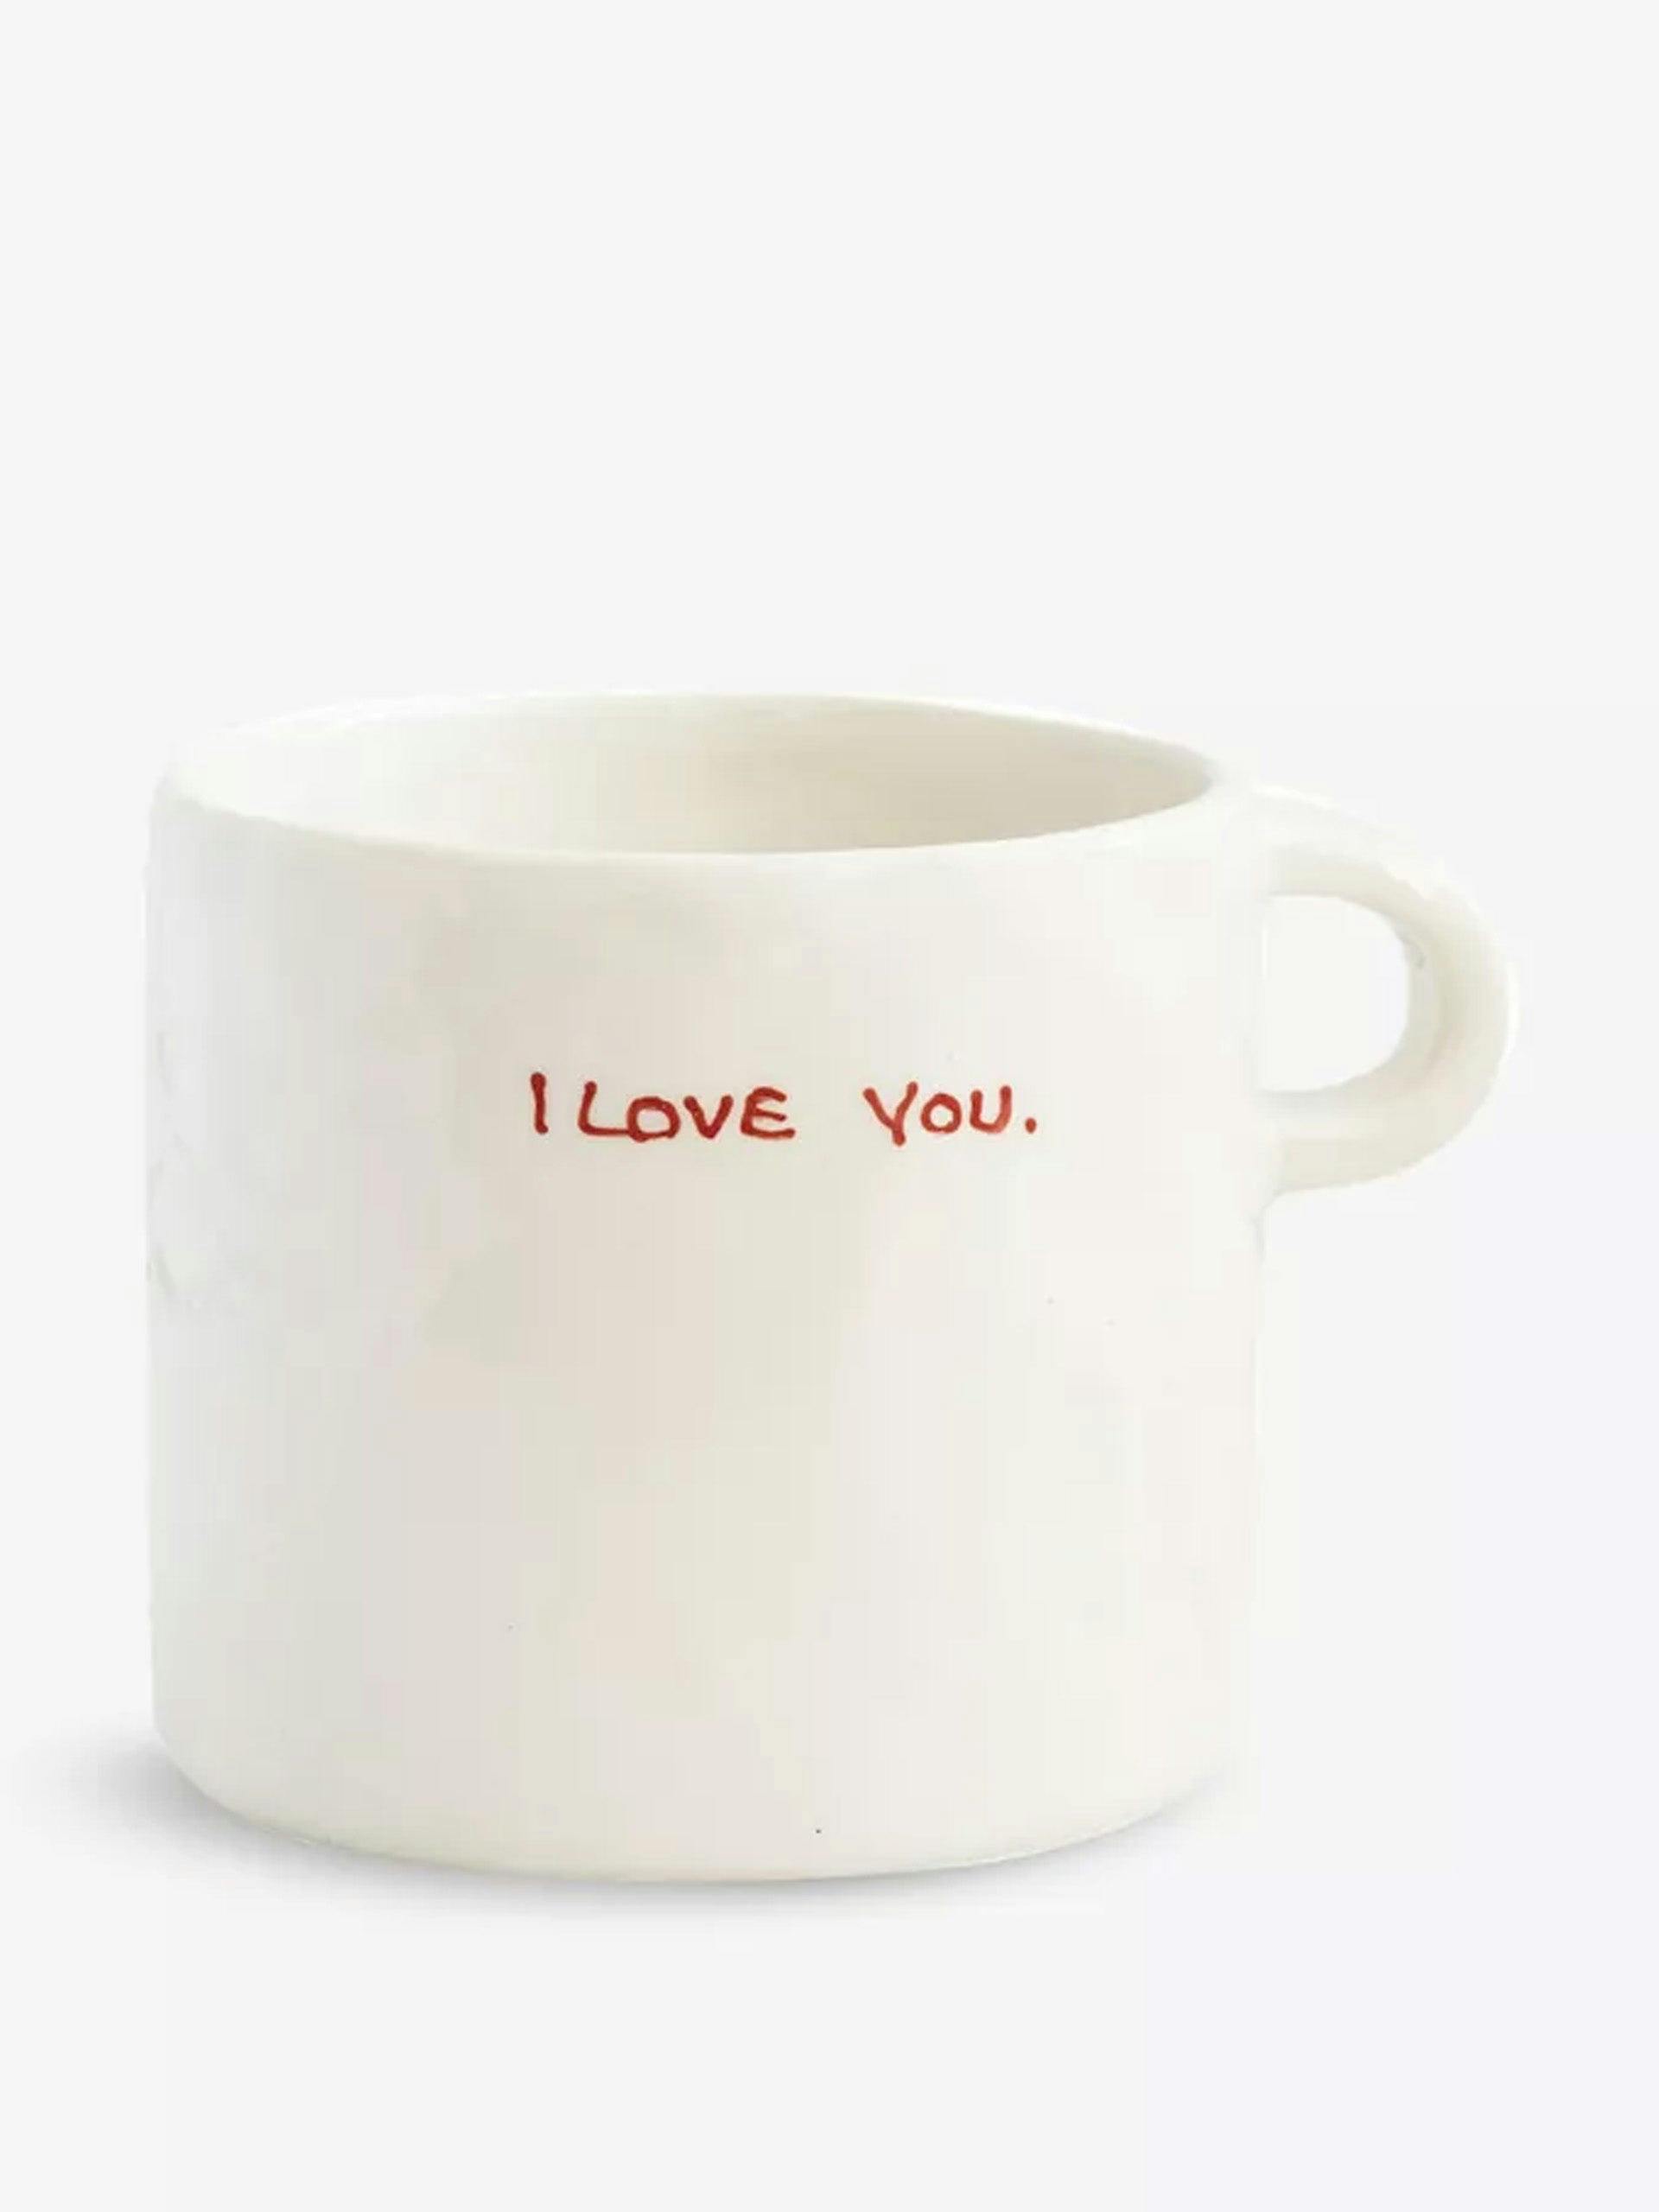 I Love You ceramic mug